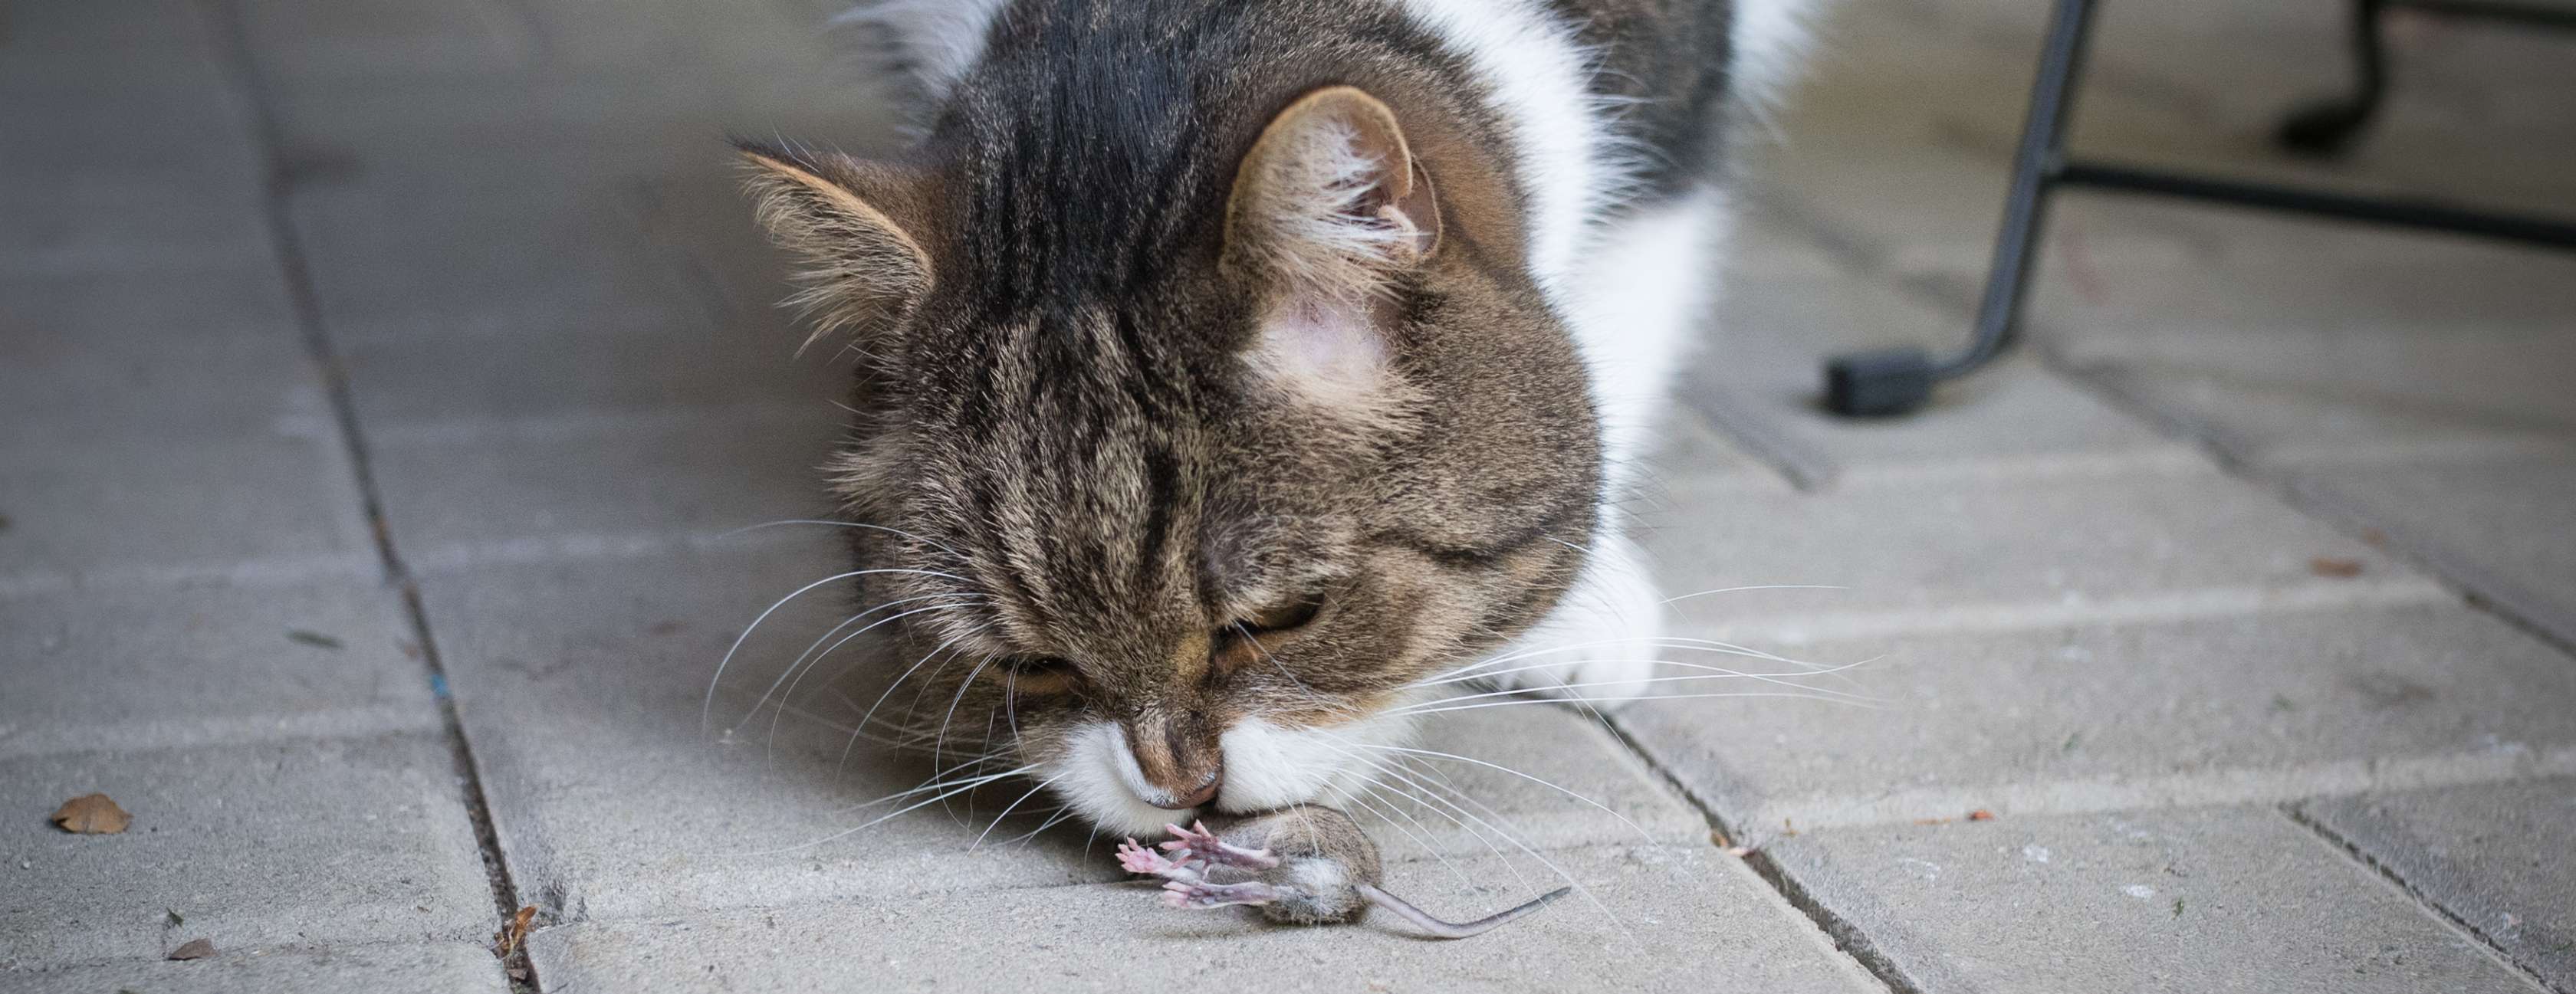  Allianz - Wurmkur Katze: Katze fängt Maus